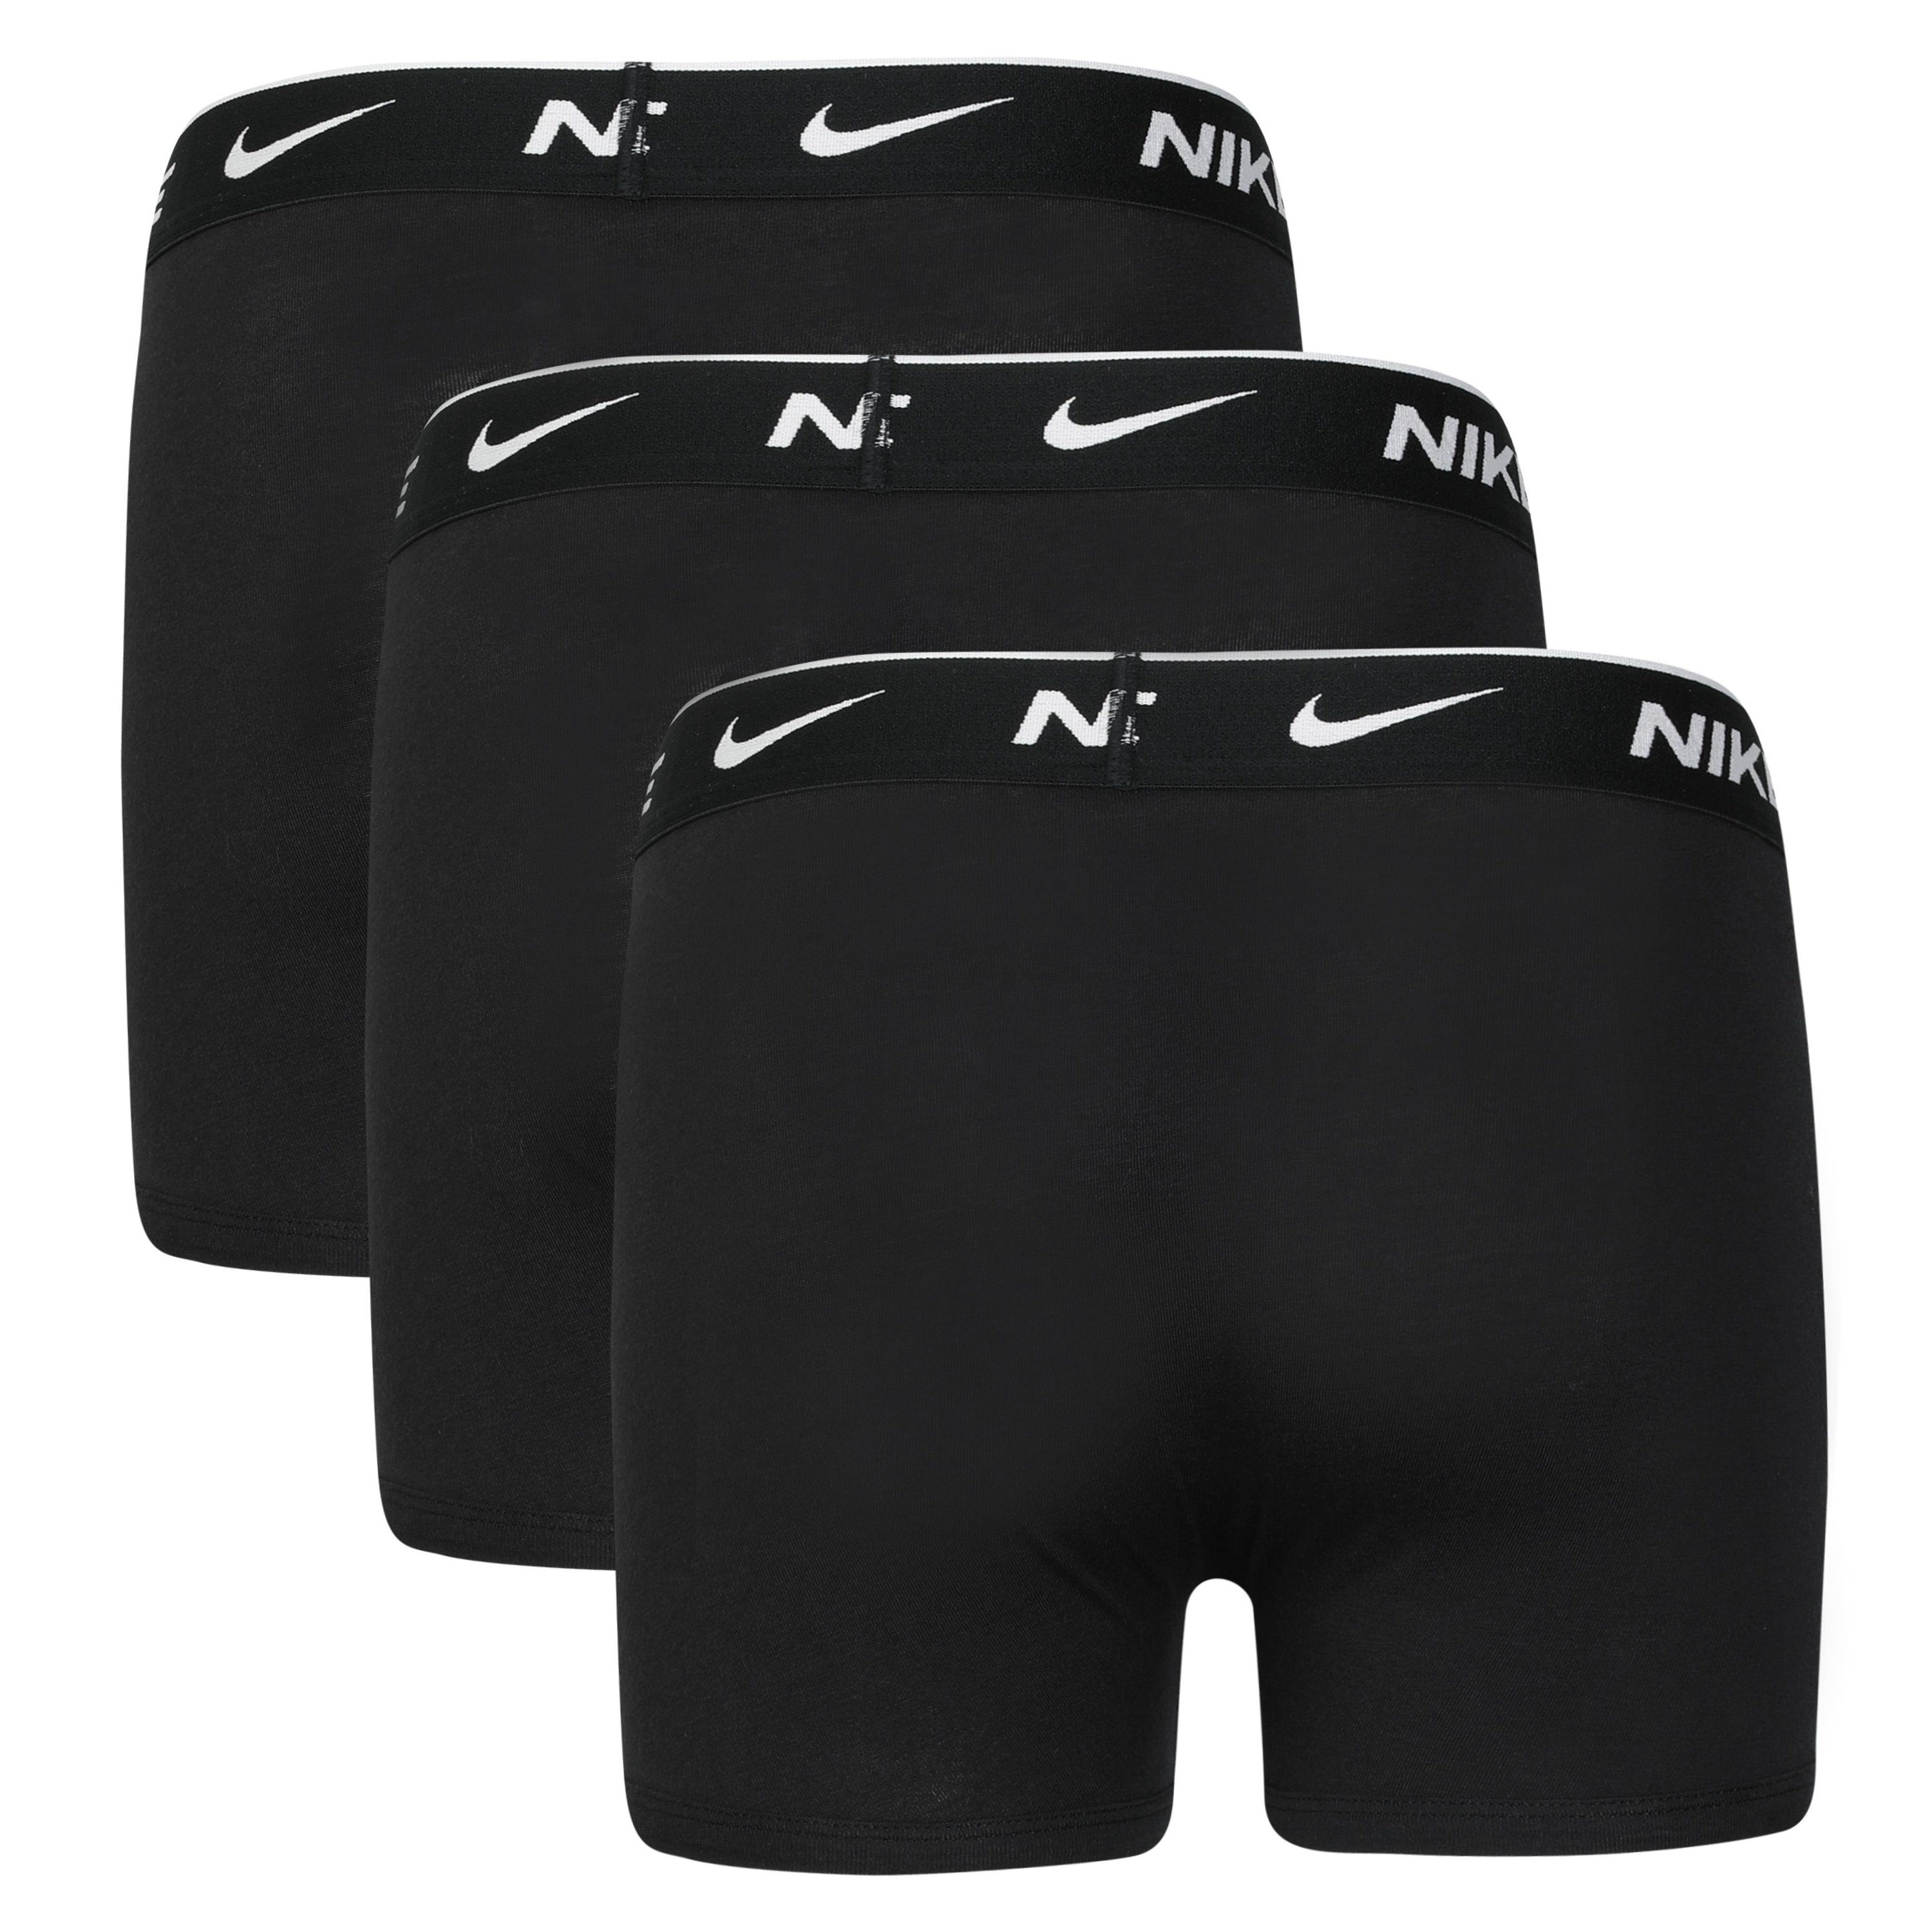 3-St., Nike Sportswear BOXER schwarz, EVERYDAY BRIEF Kinder schwarz, für Boxershorts COTTON 3er-Pack) schwarz (Packung, 3PK